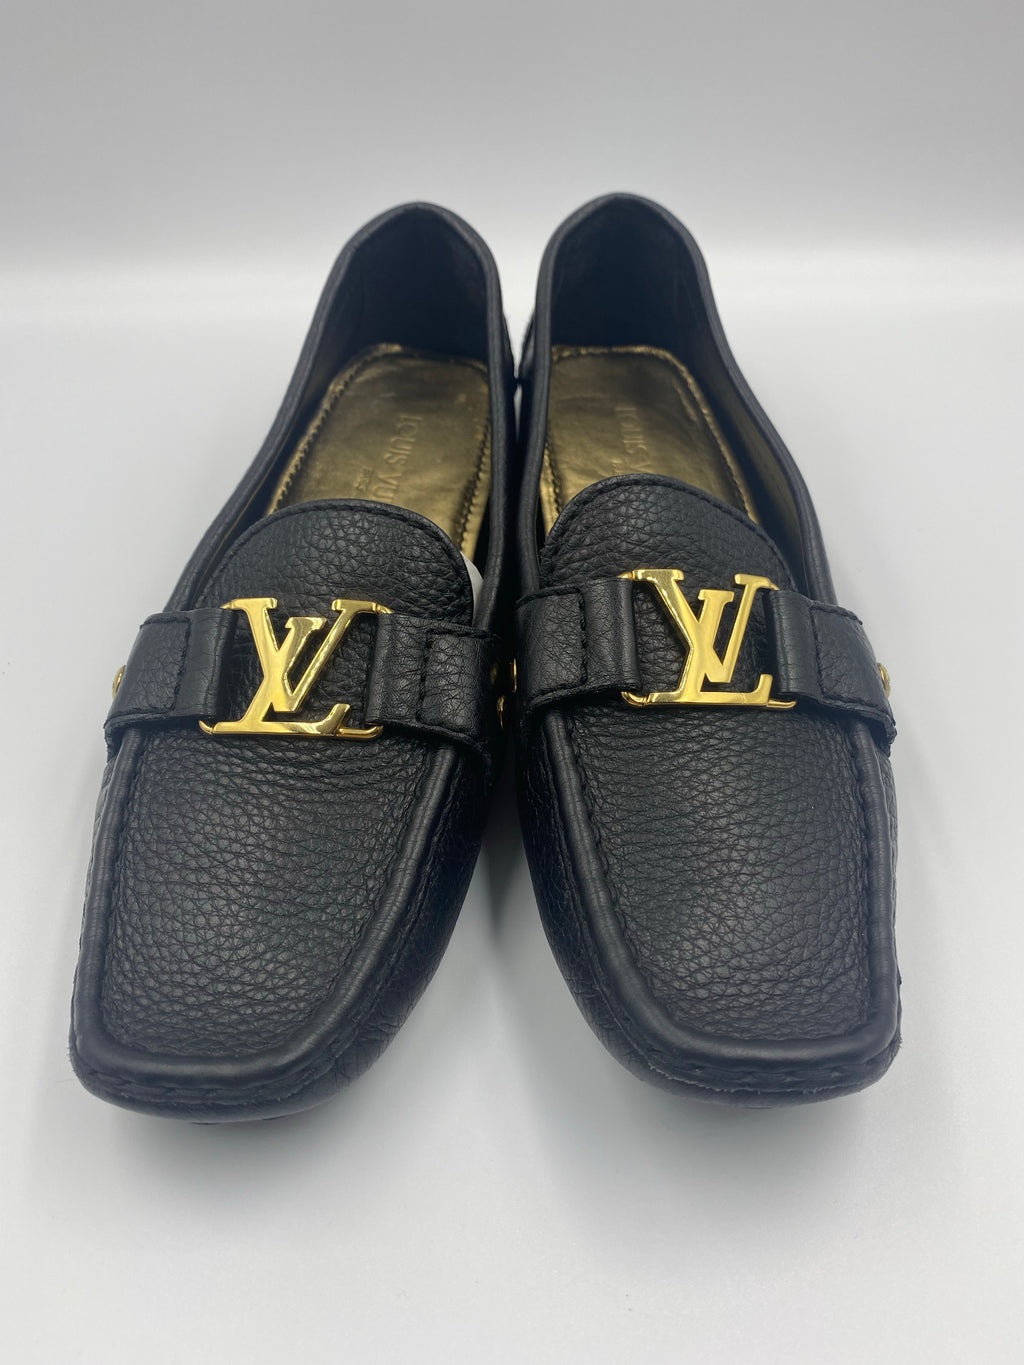 Louis Vuitton, Shoes, Louis Vuitton Black Textured Leather Driving Loafer  Sz 4